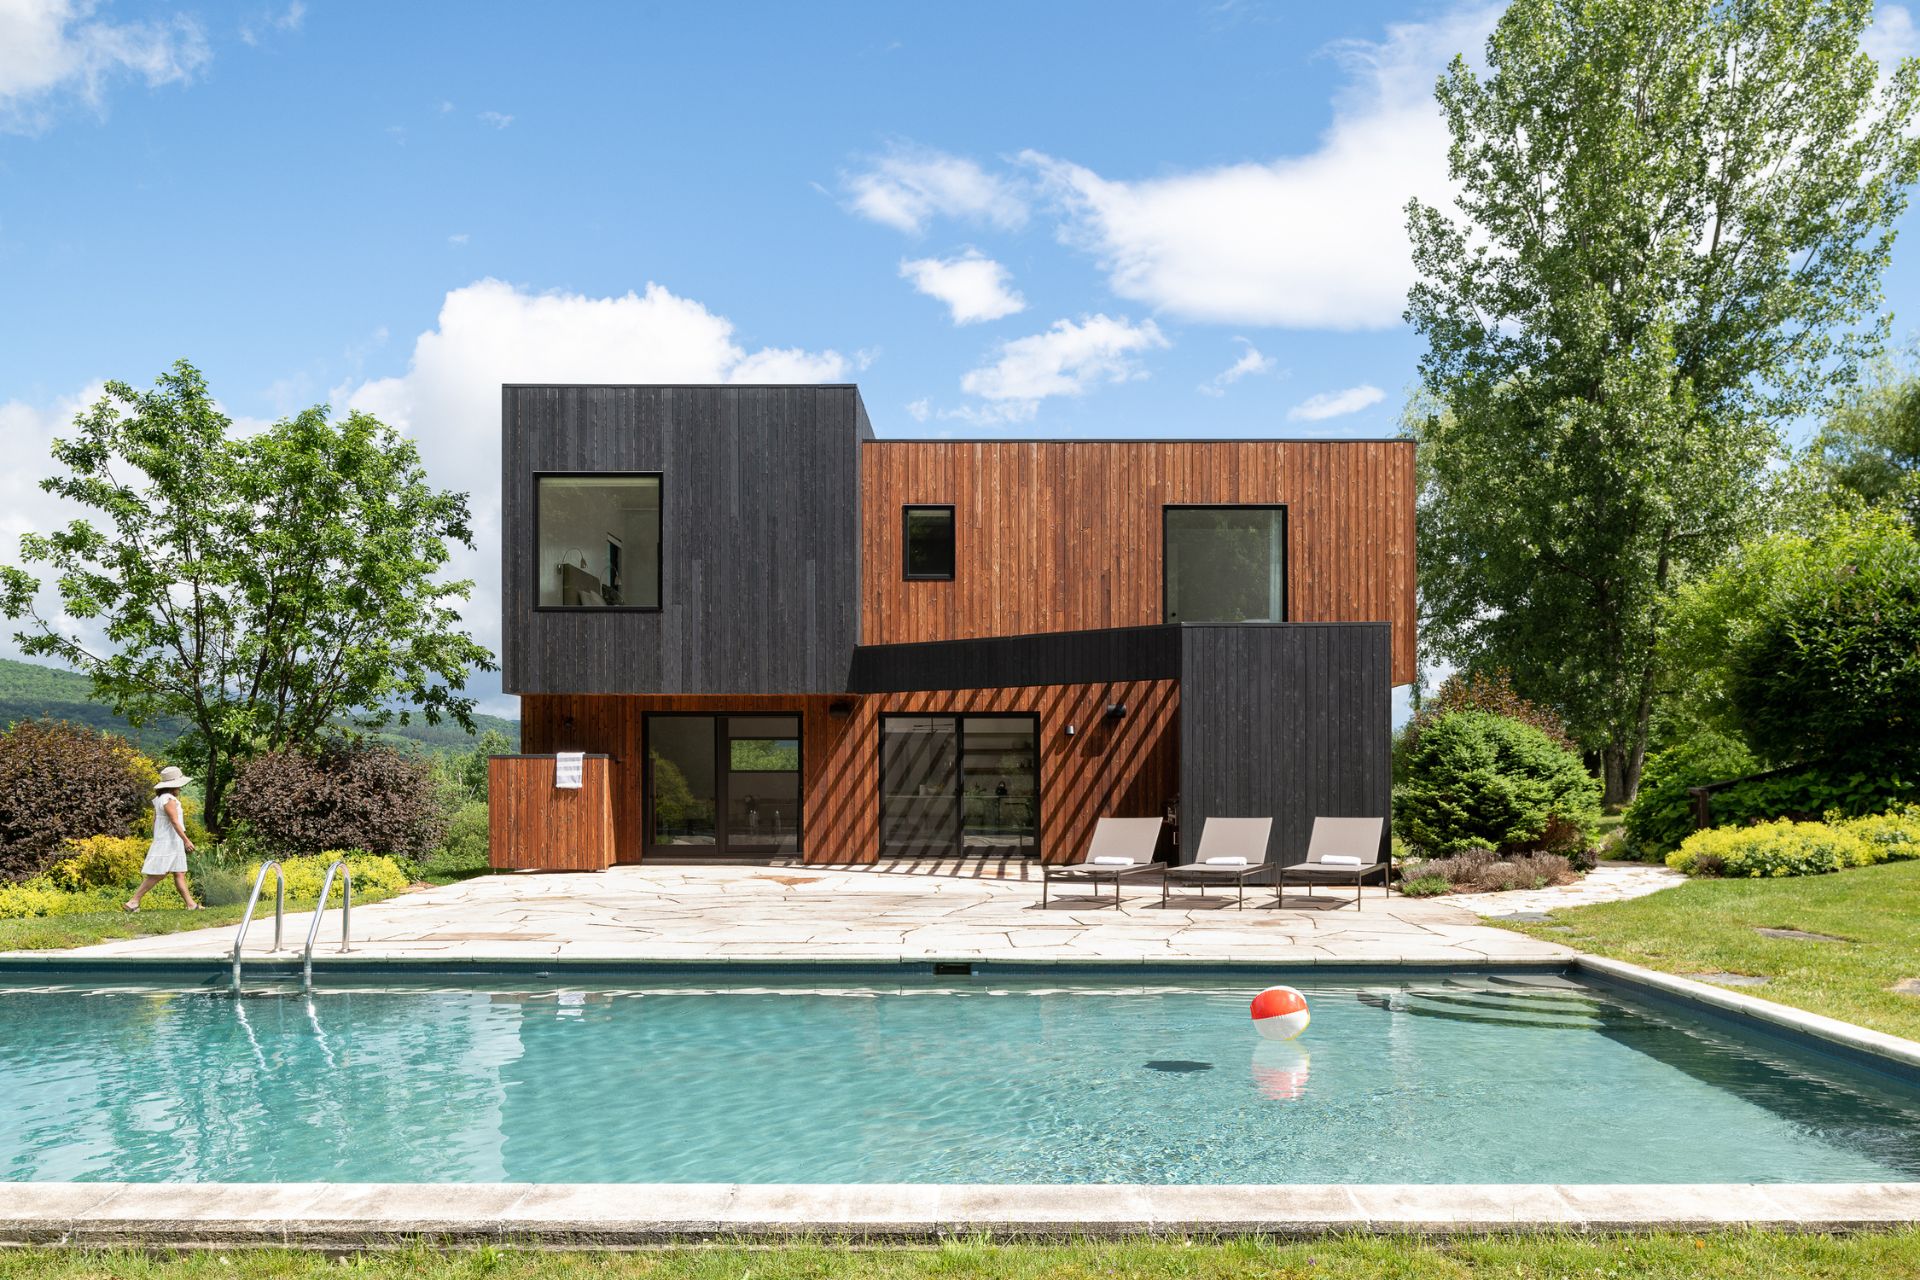 Haus mit schwarzer und hellbrauner Fassade und einem großen Pool auf der Vorderseite